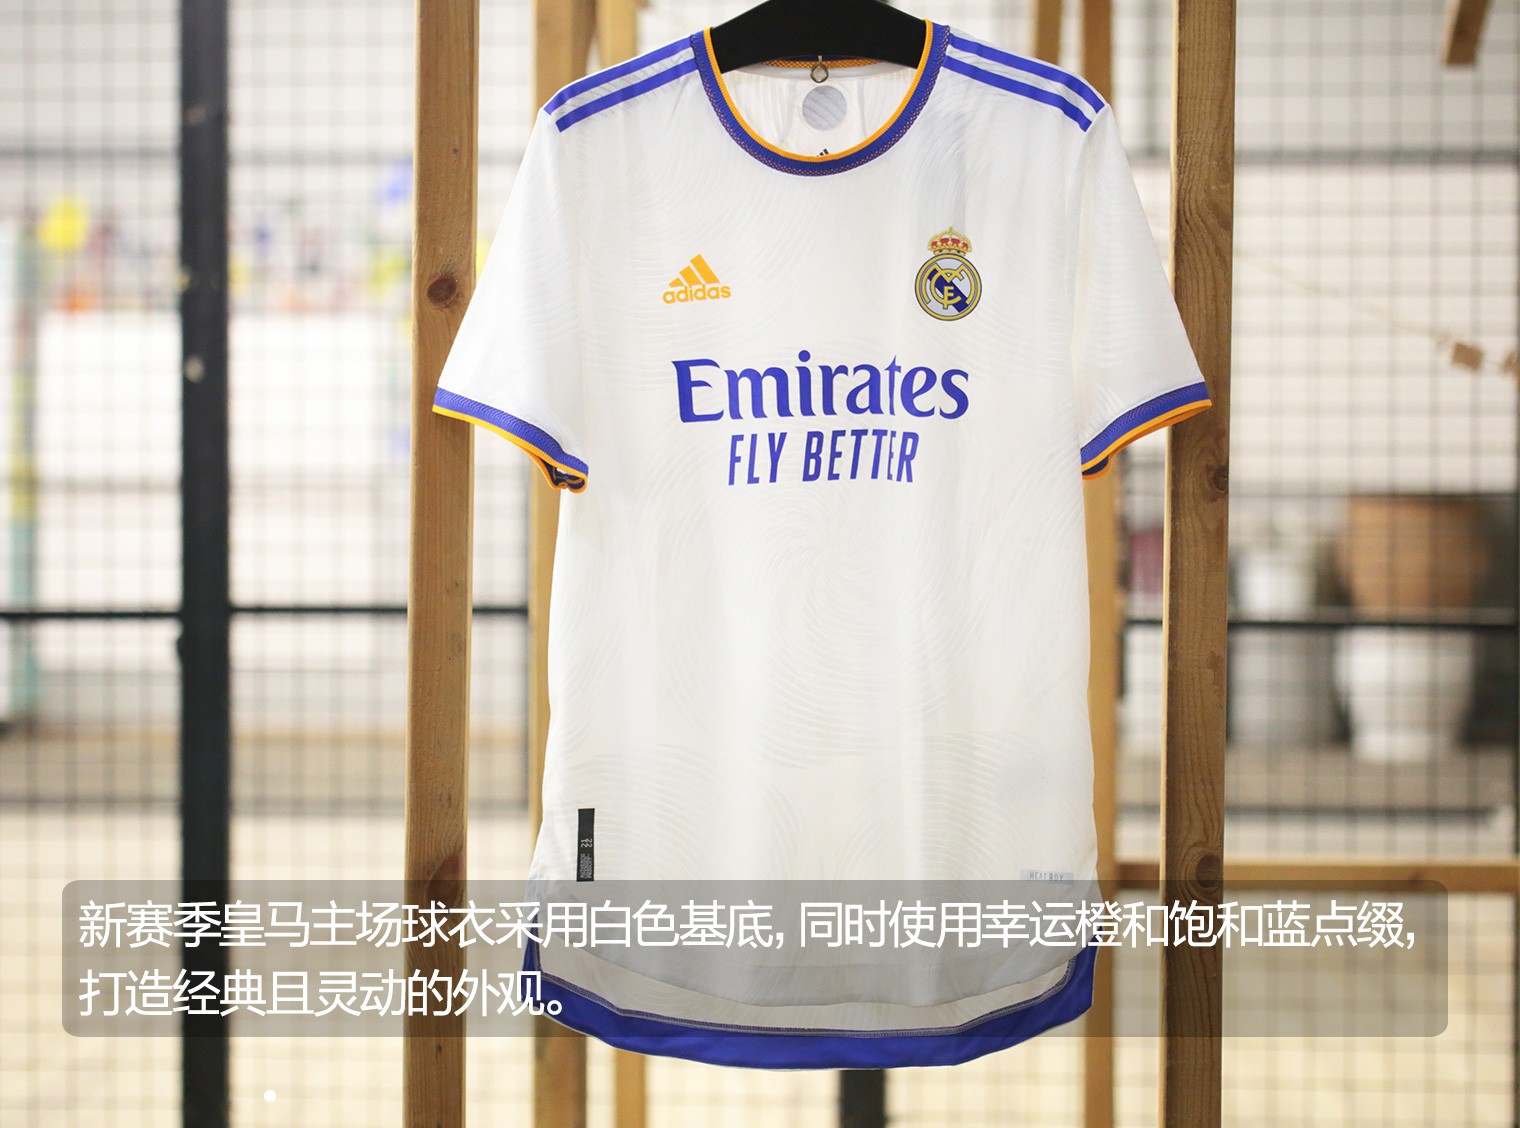 皇马全新主场球衣保持了一贯"白衣飘飘"的风格,但是在这件新球衣上